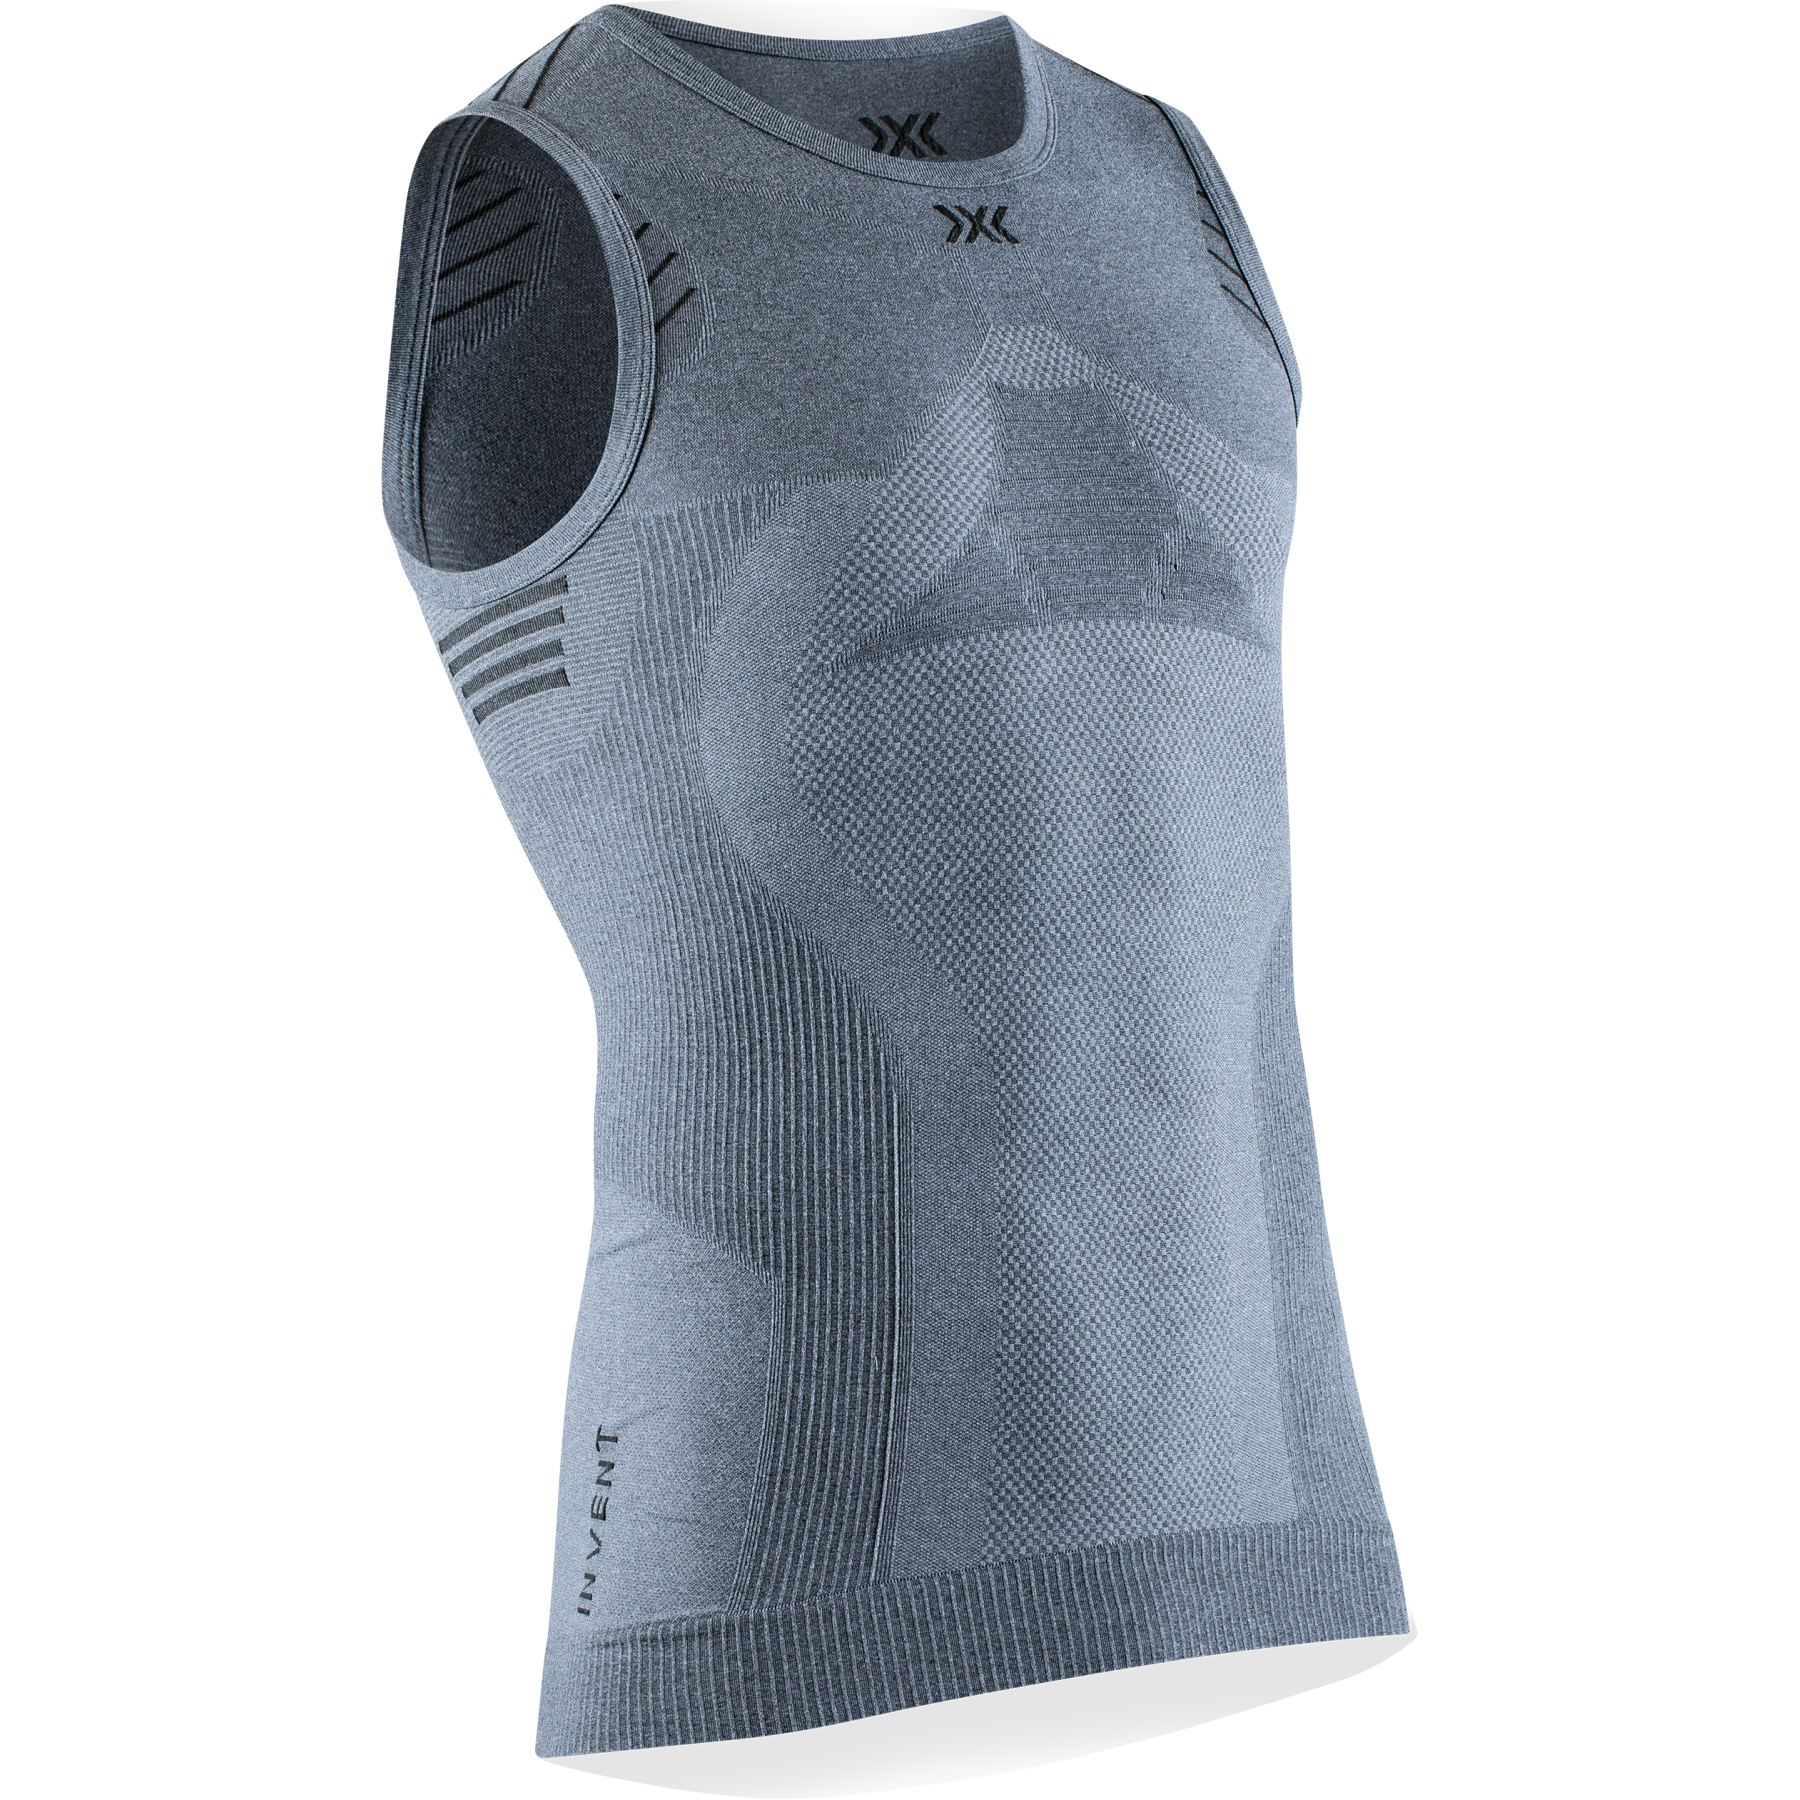 Produktbild von X-Bionic Invent 4.0 LT Singlet Unterhemd für Herren - grey melange/anthracite